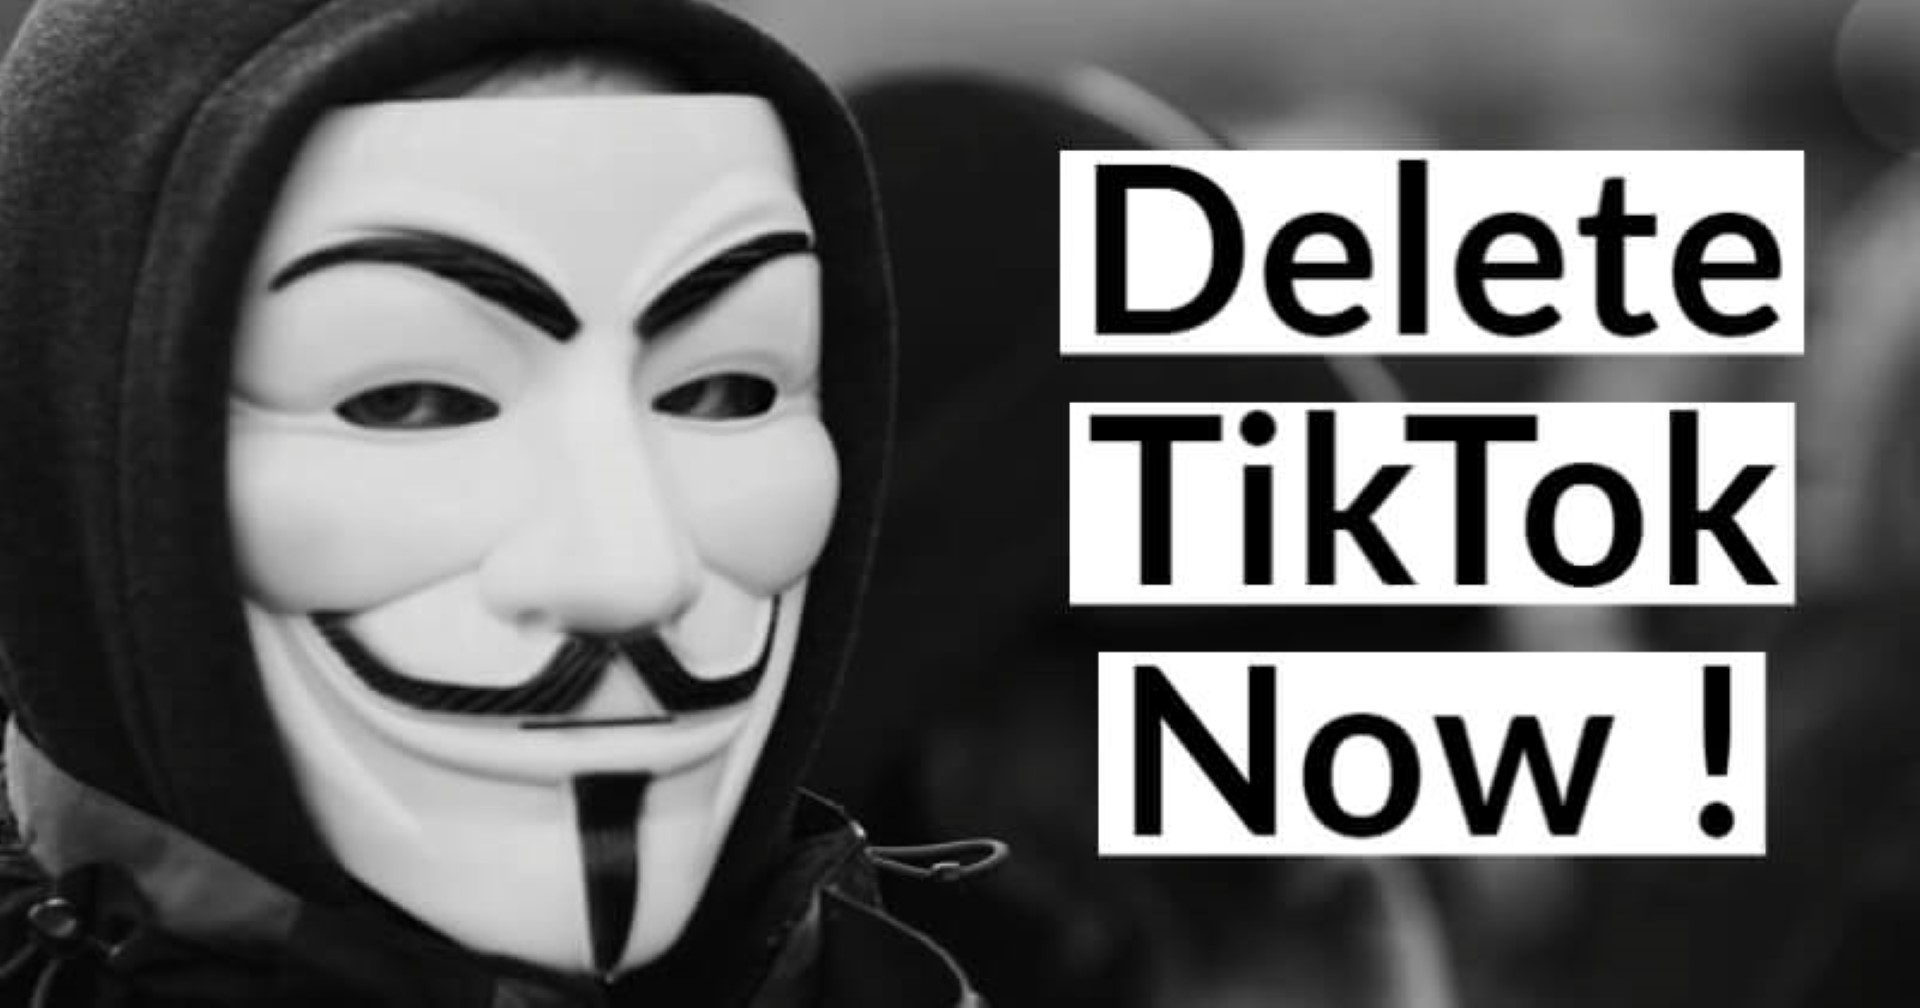 anonymous contro titktok